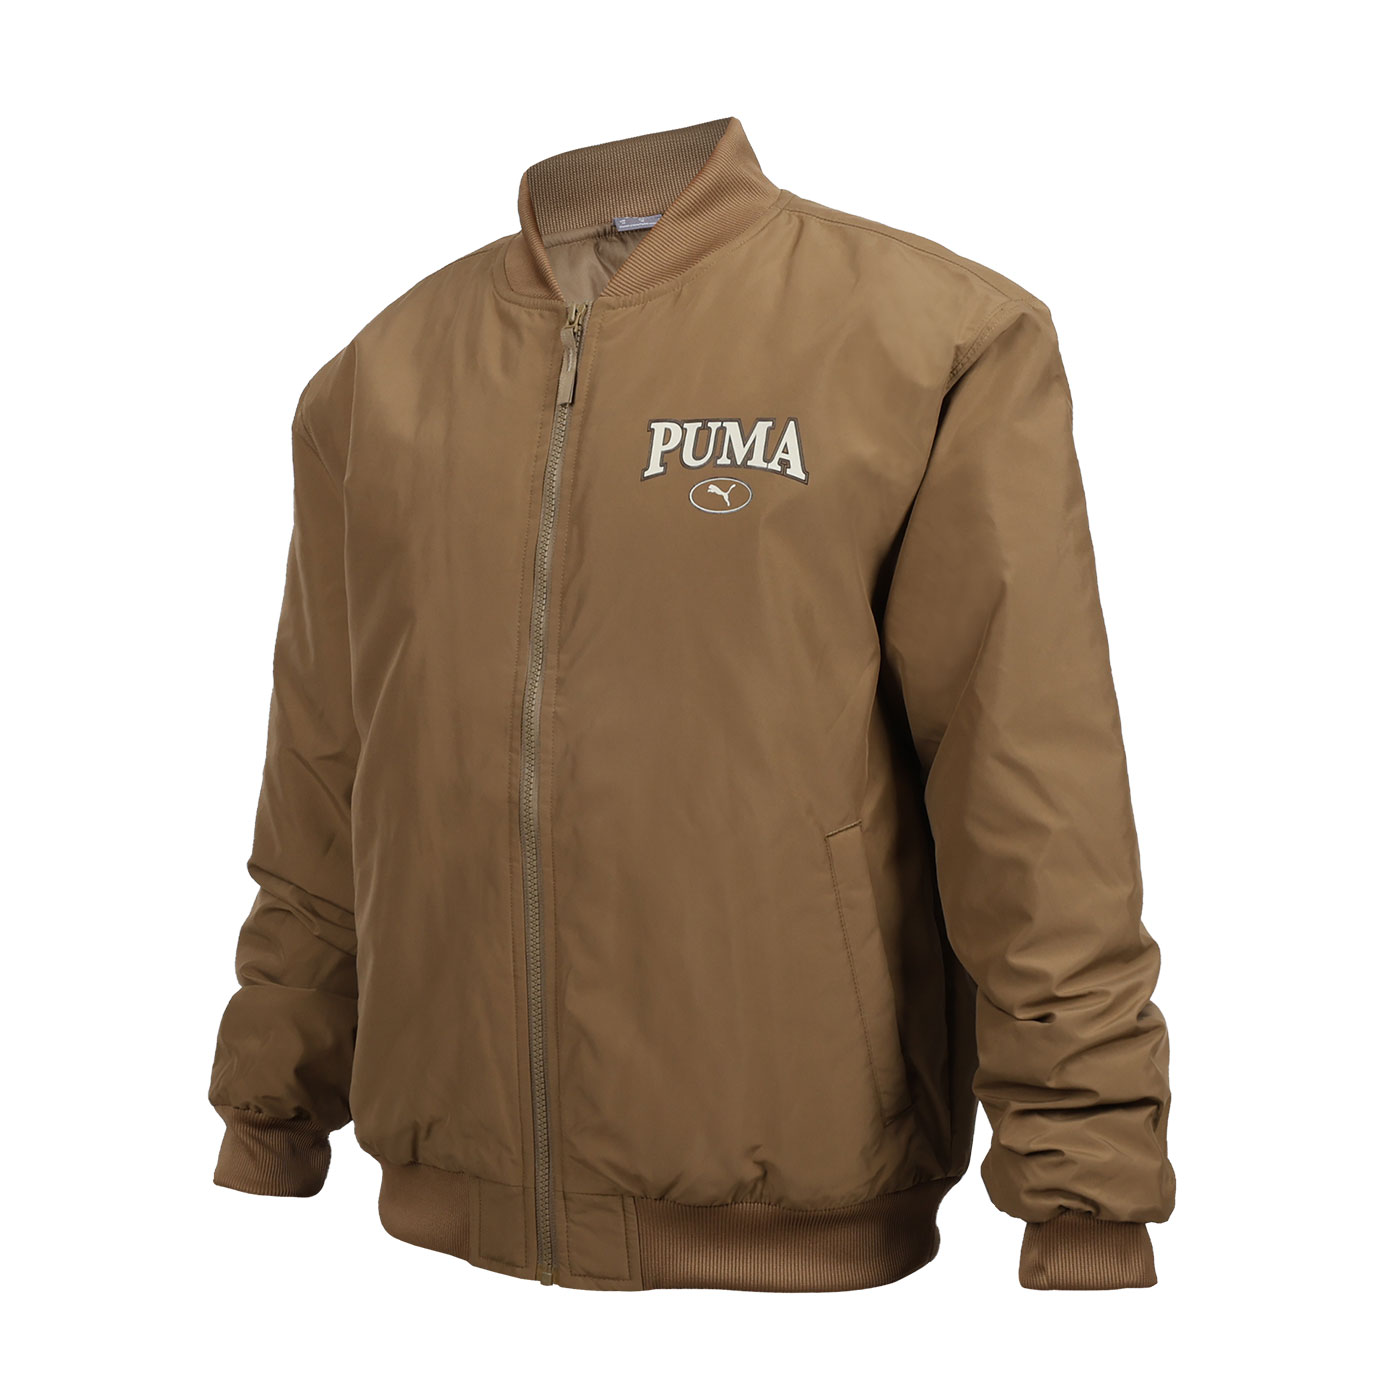 PUMA 男款基本系列Puma Squad棒球外套  68000893